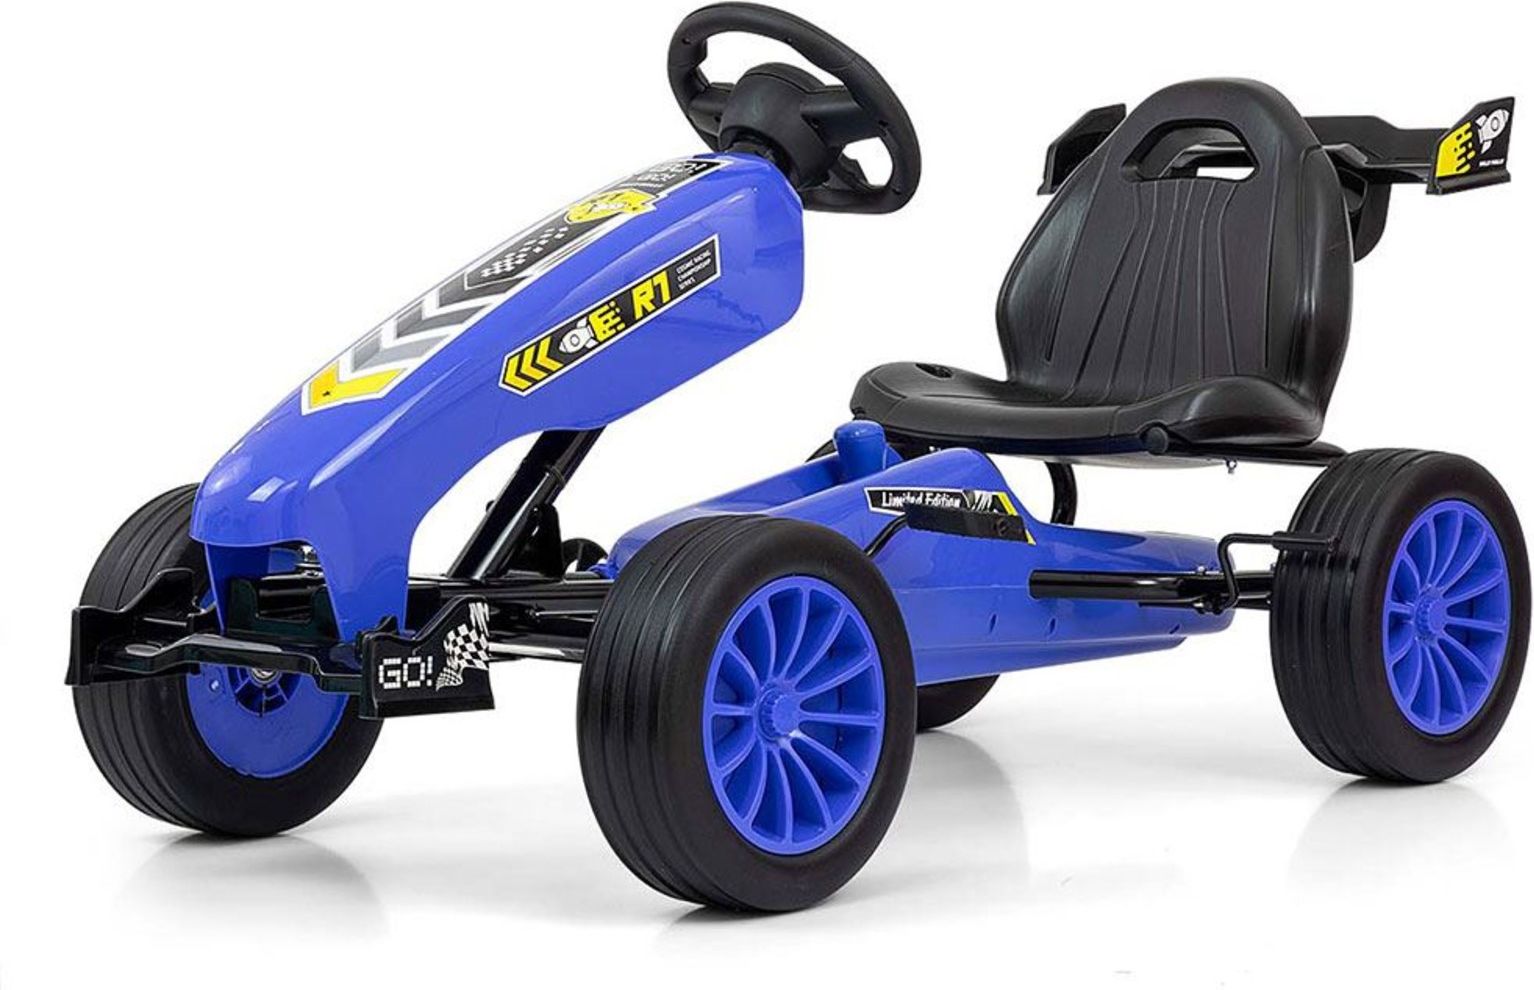 Dětská šlapací motokára Go-kart Milly Mally Rocket modrá - obrázek 1